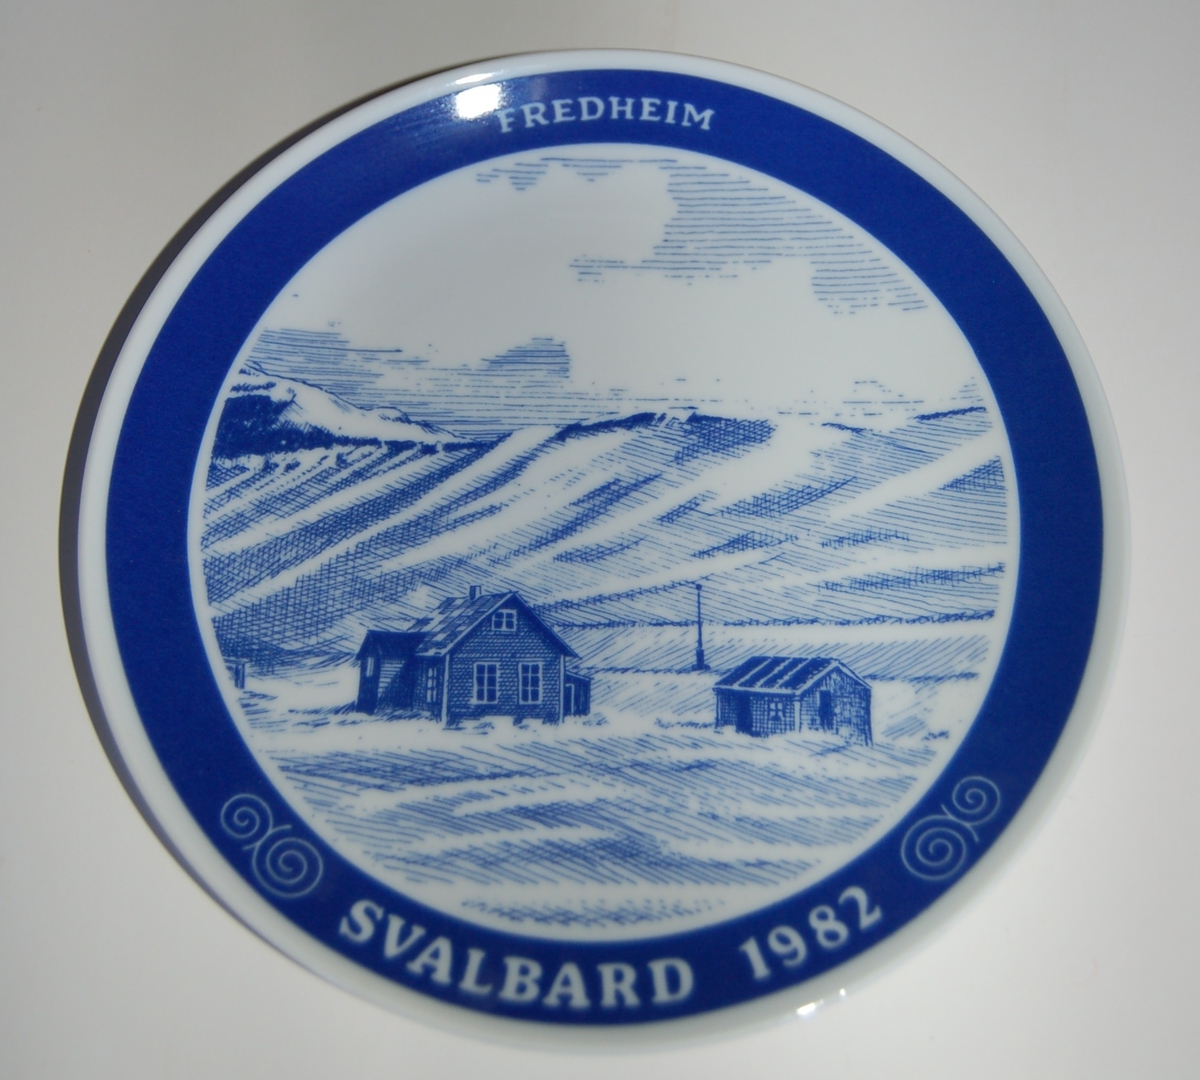 Porselensplatte (fat) med påmalt motiv fra Svalbard, til å henge på vegg som veggpryd.